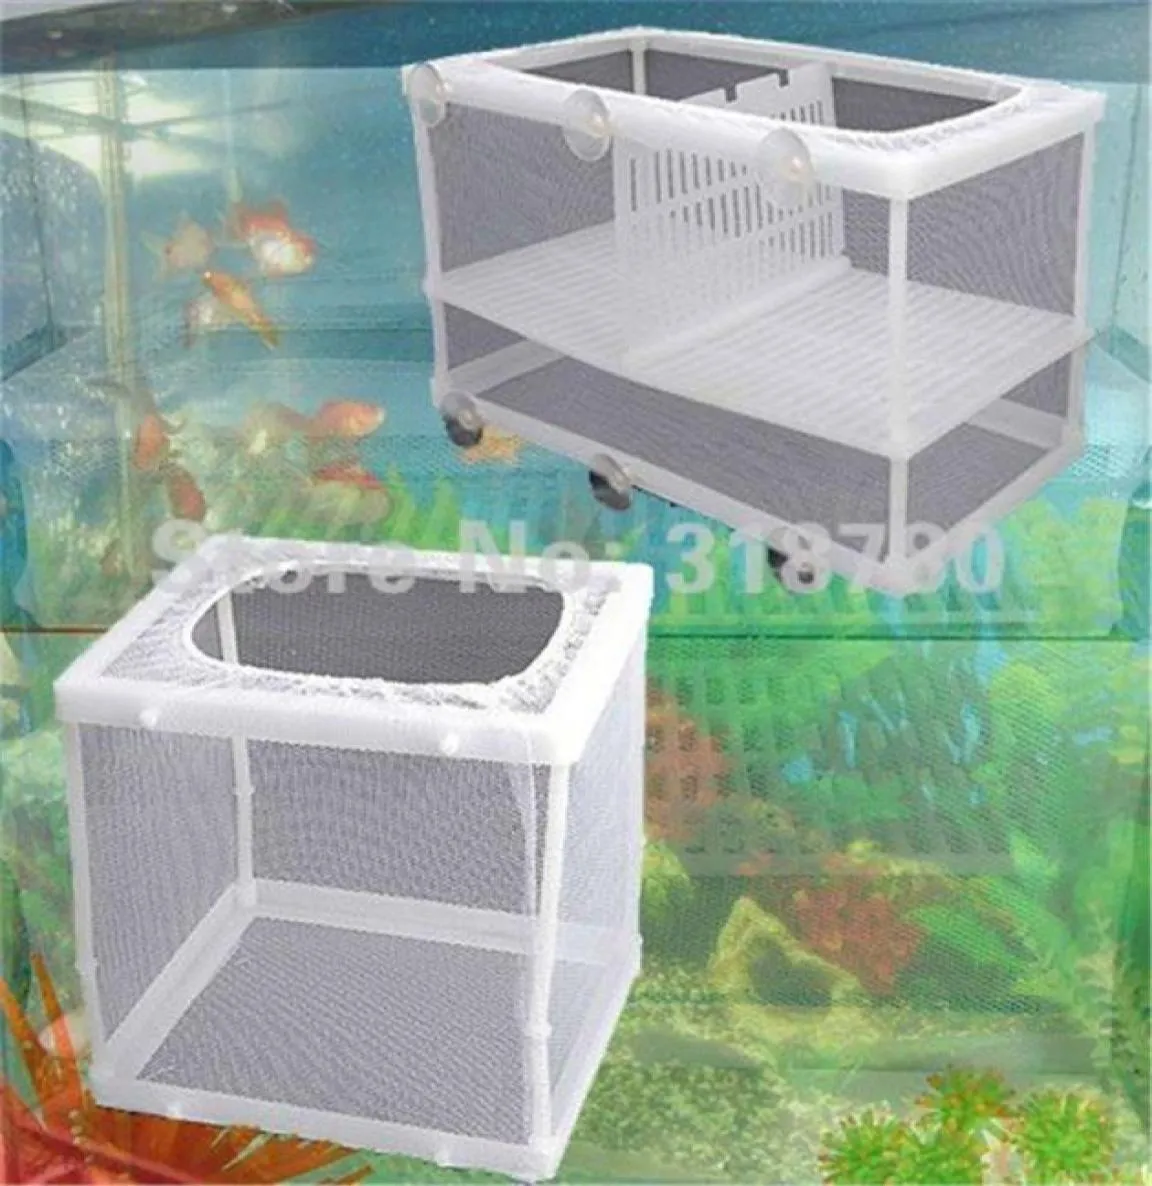 SL intera scatola da allevamento di pesce d'acquario rete a vivaio sospeso per vivaio per accessori per acquario3974608